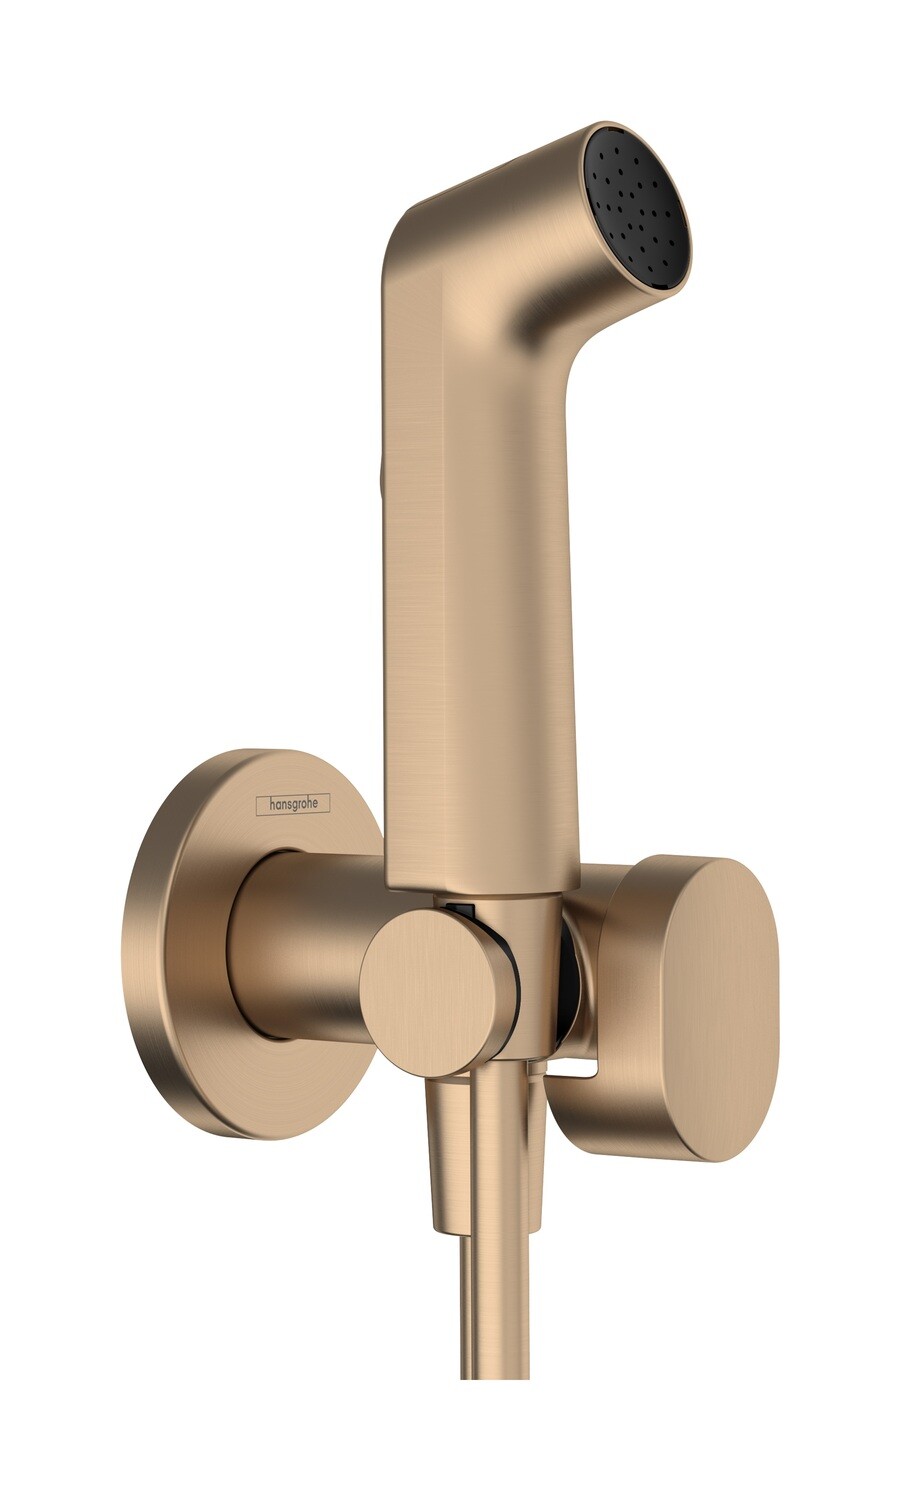 Douchette hygiénique pour WC Hansgrohe S en bronze brossé pour eau mitigée avec support et flexible